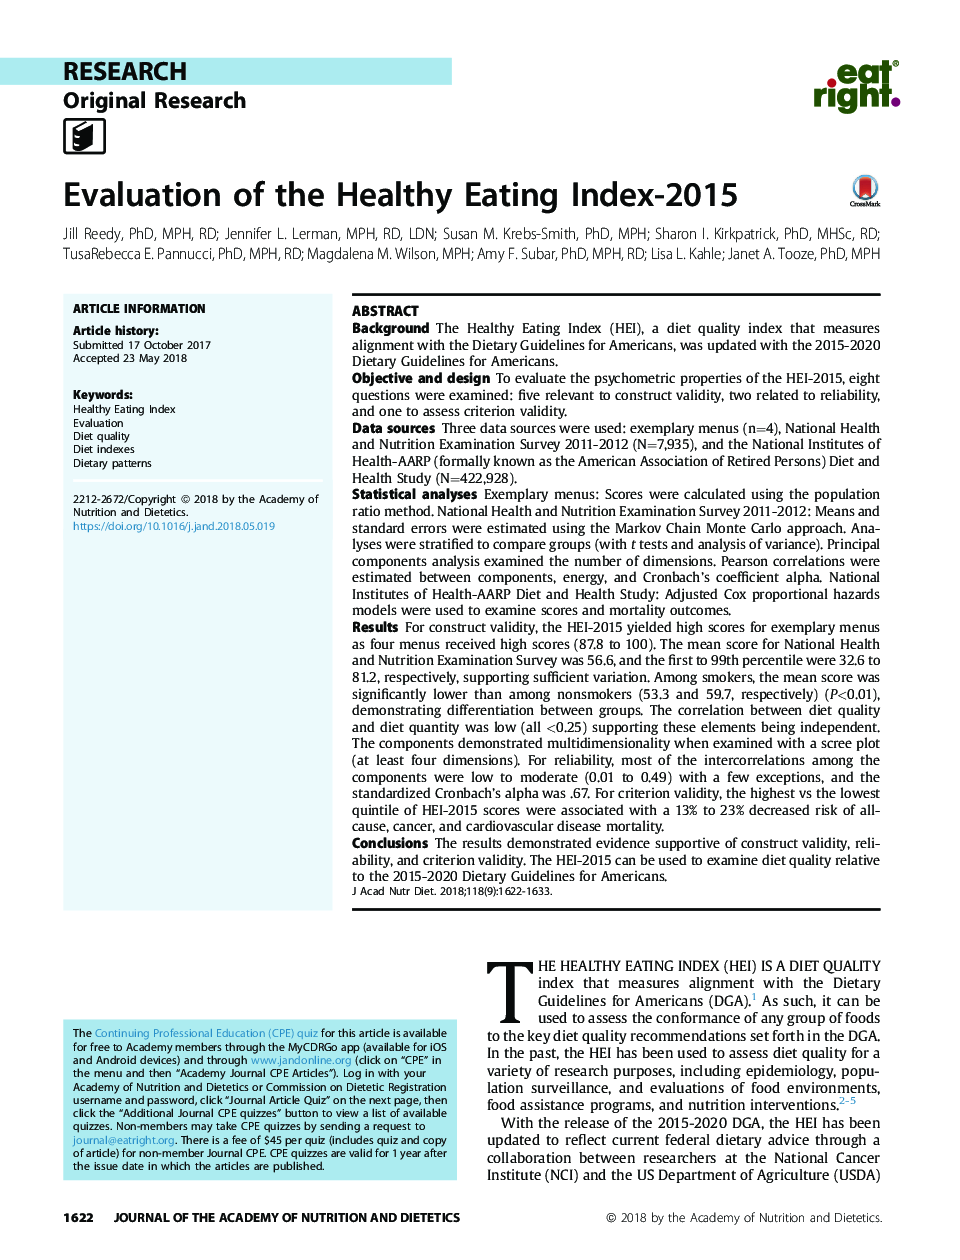 ارزیابی شاخص غذا خوردن سالم 2015